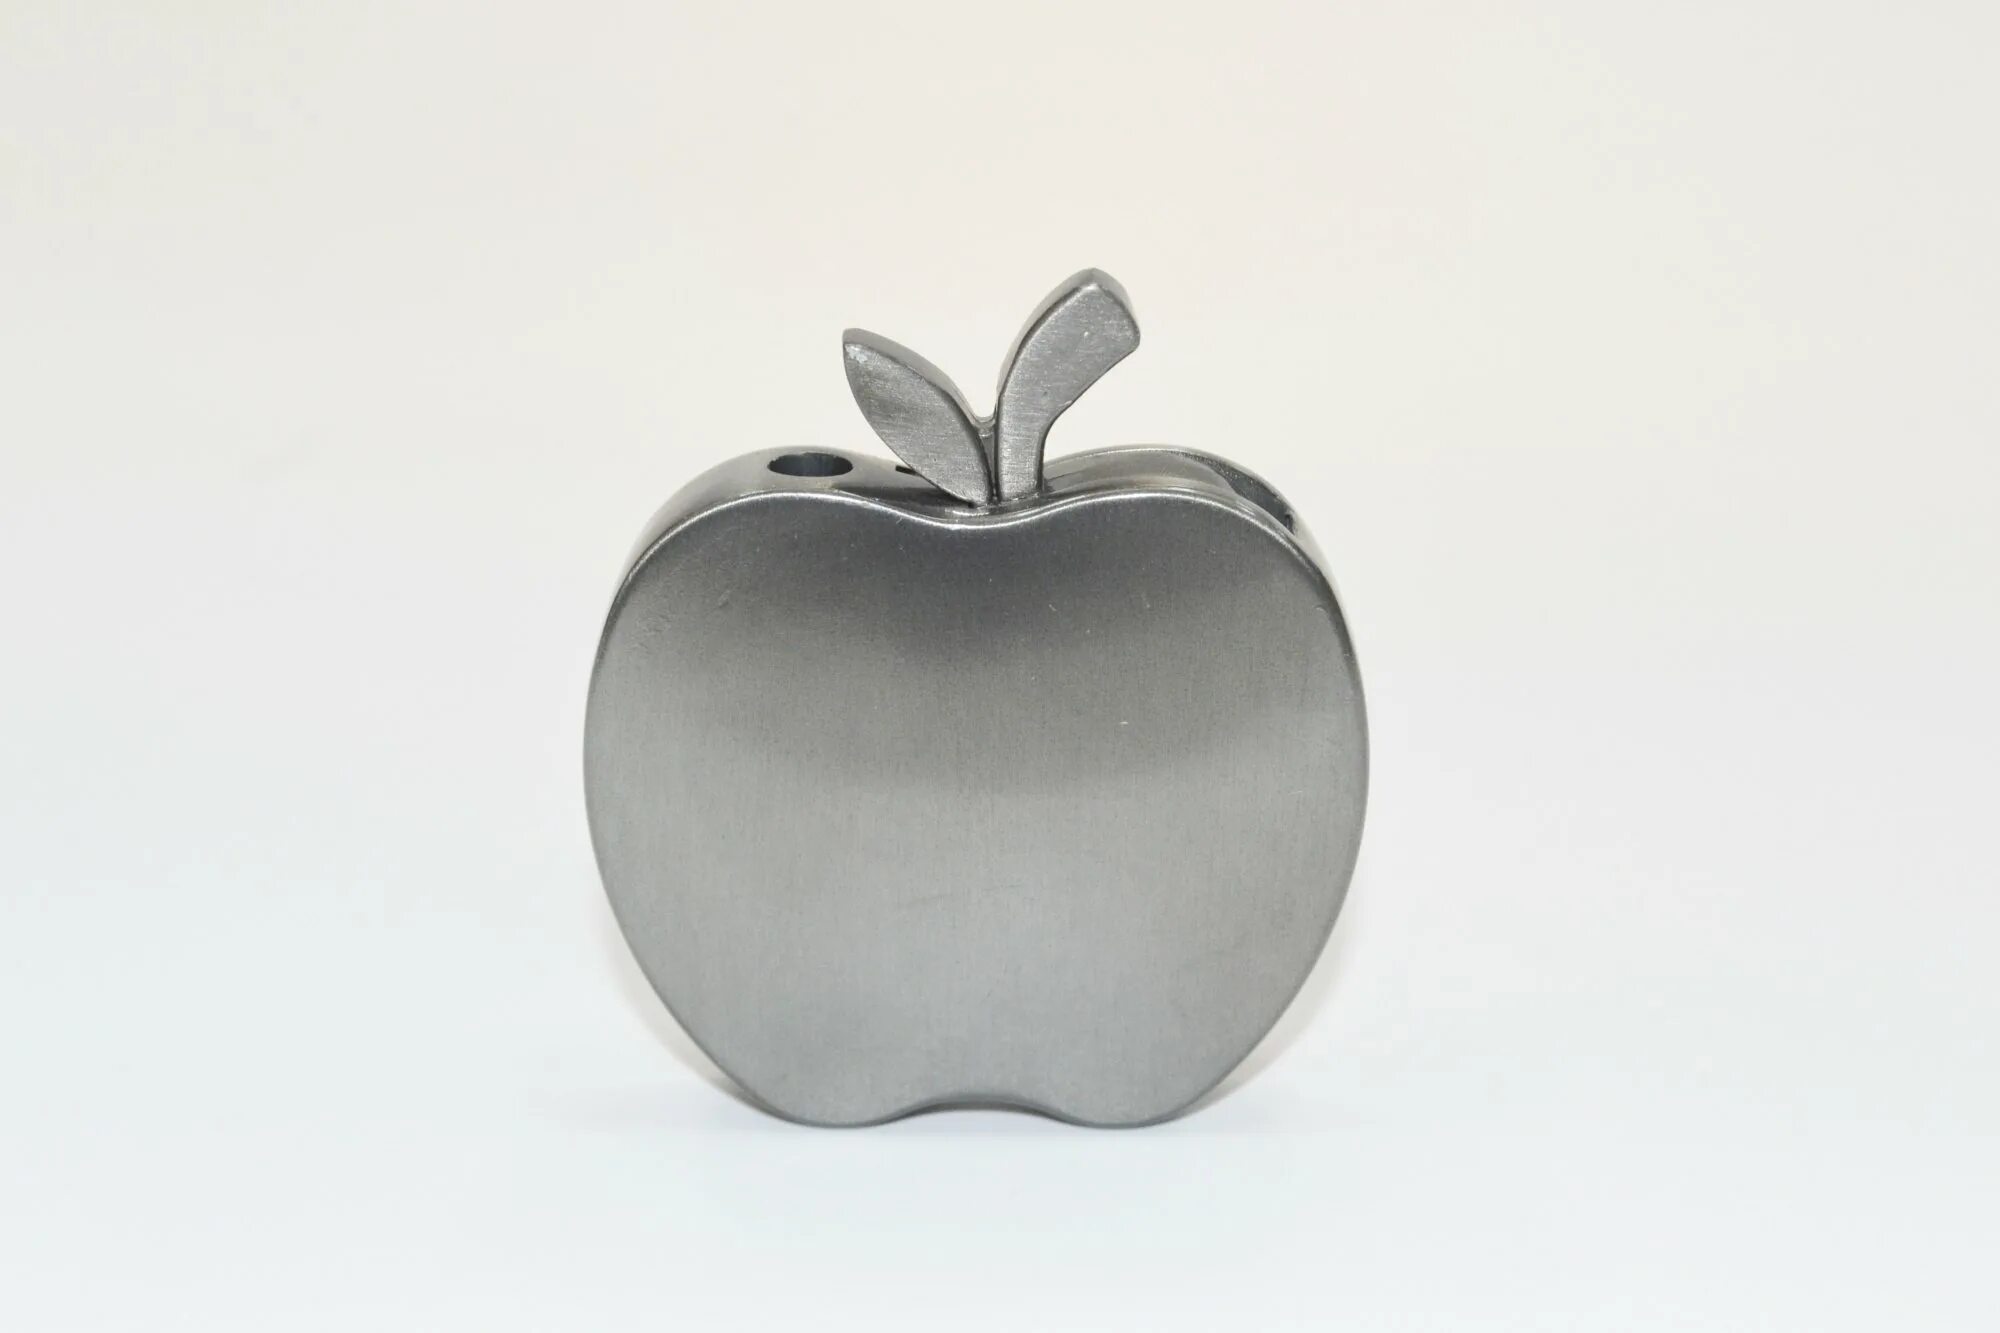 Apple turkey. Зажигалка яблоко. Зажигалка Apple. Зажигалка яблочко Apple. Зажигалка в виде яблока Apple.